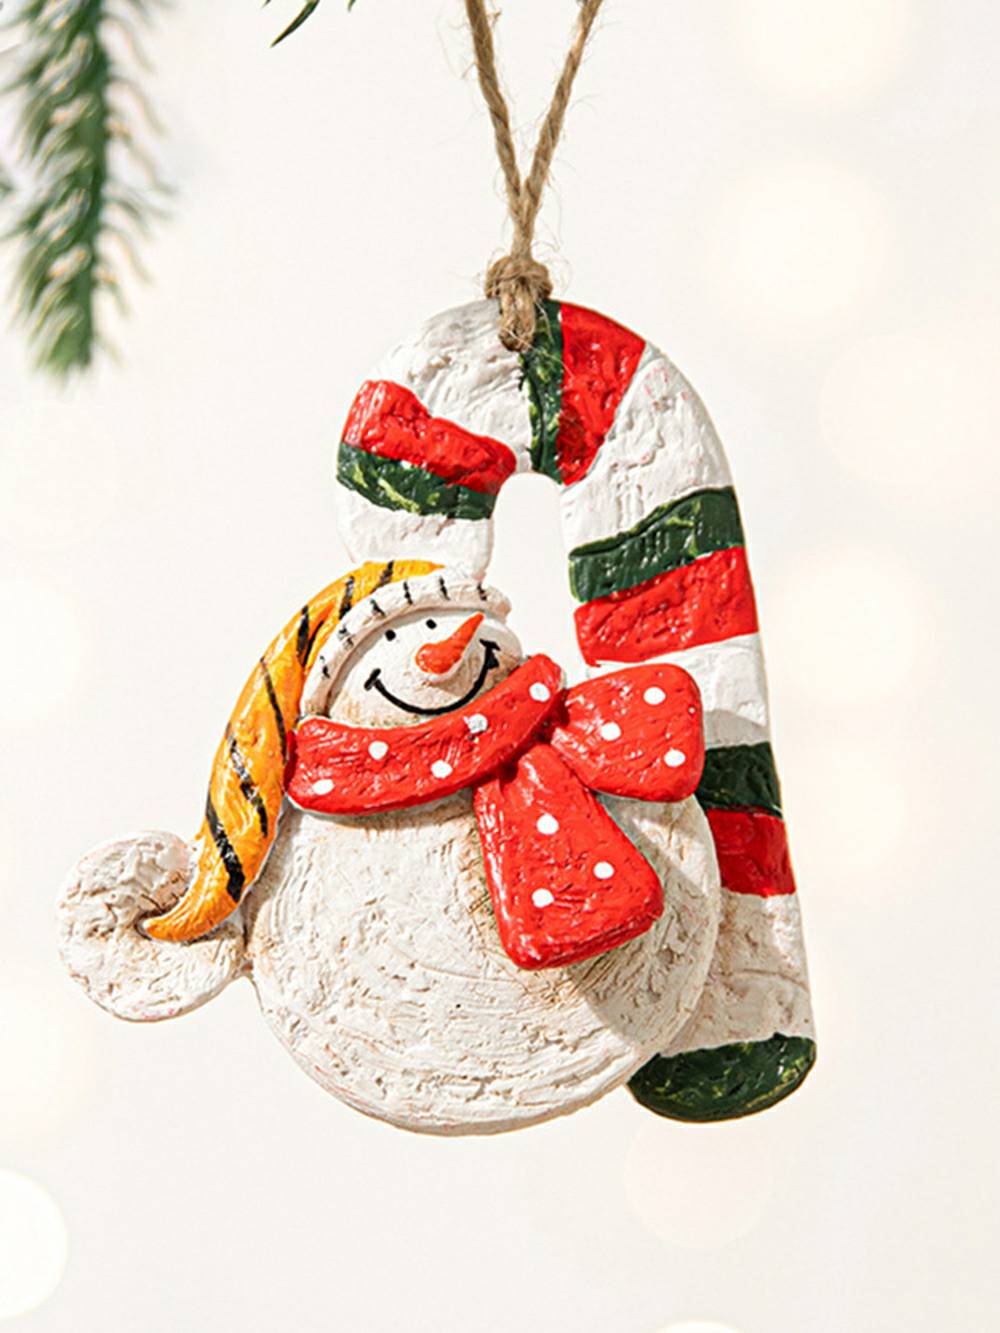 Vintage stijl keramiek geschilderd hars kerstman hart ornament